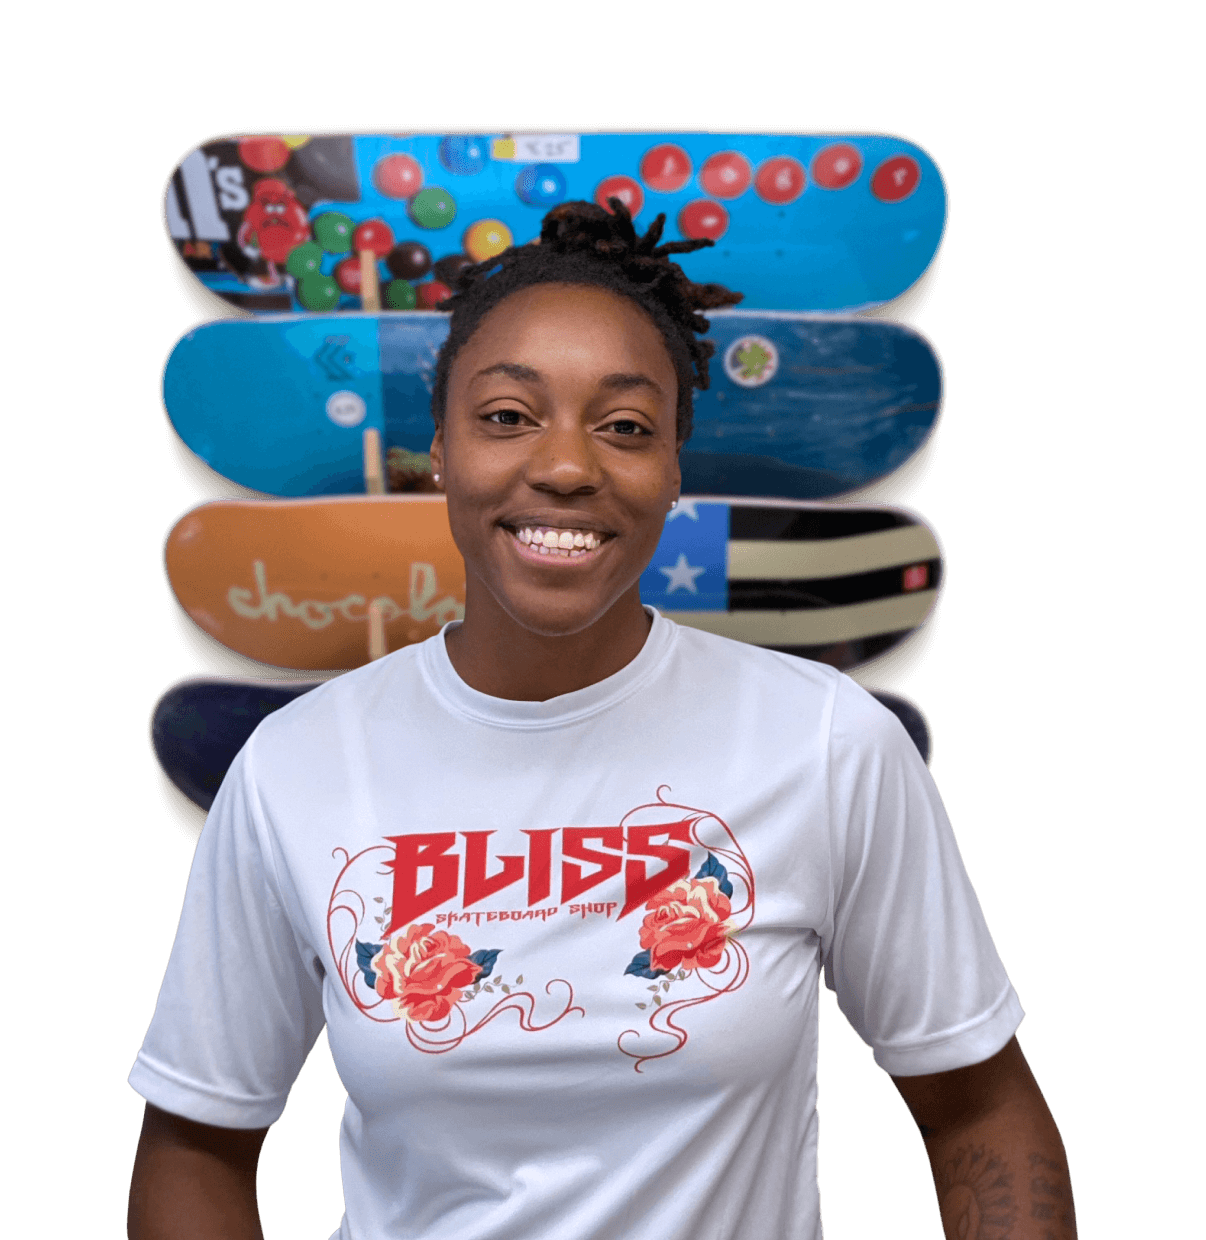 Sasha Senior, fondatrice de Bliss Skateboard Shop, sourit, debout devant des planches à roulettes colorées fixées à un mur